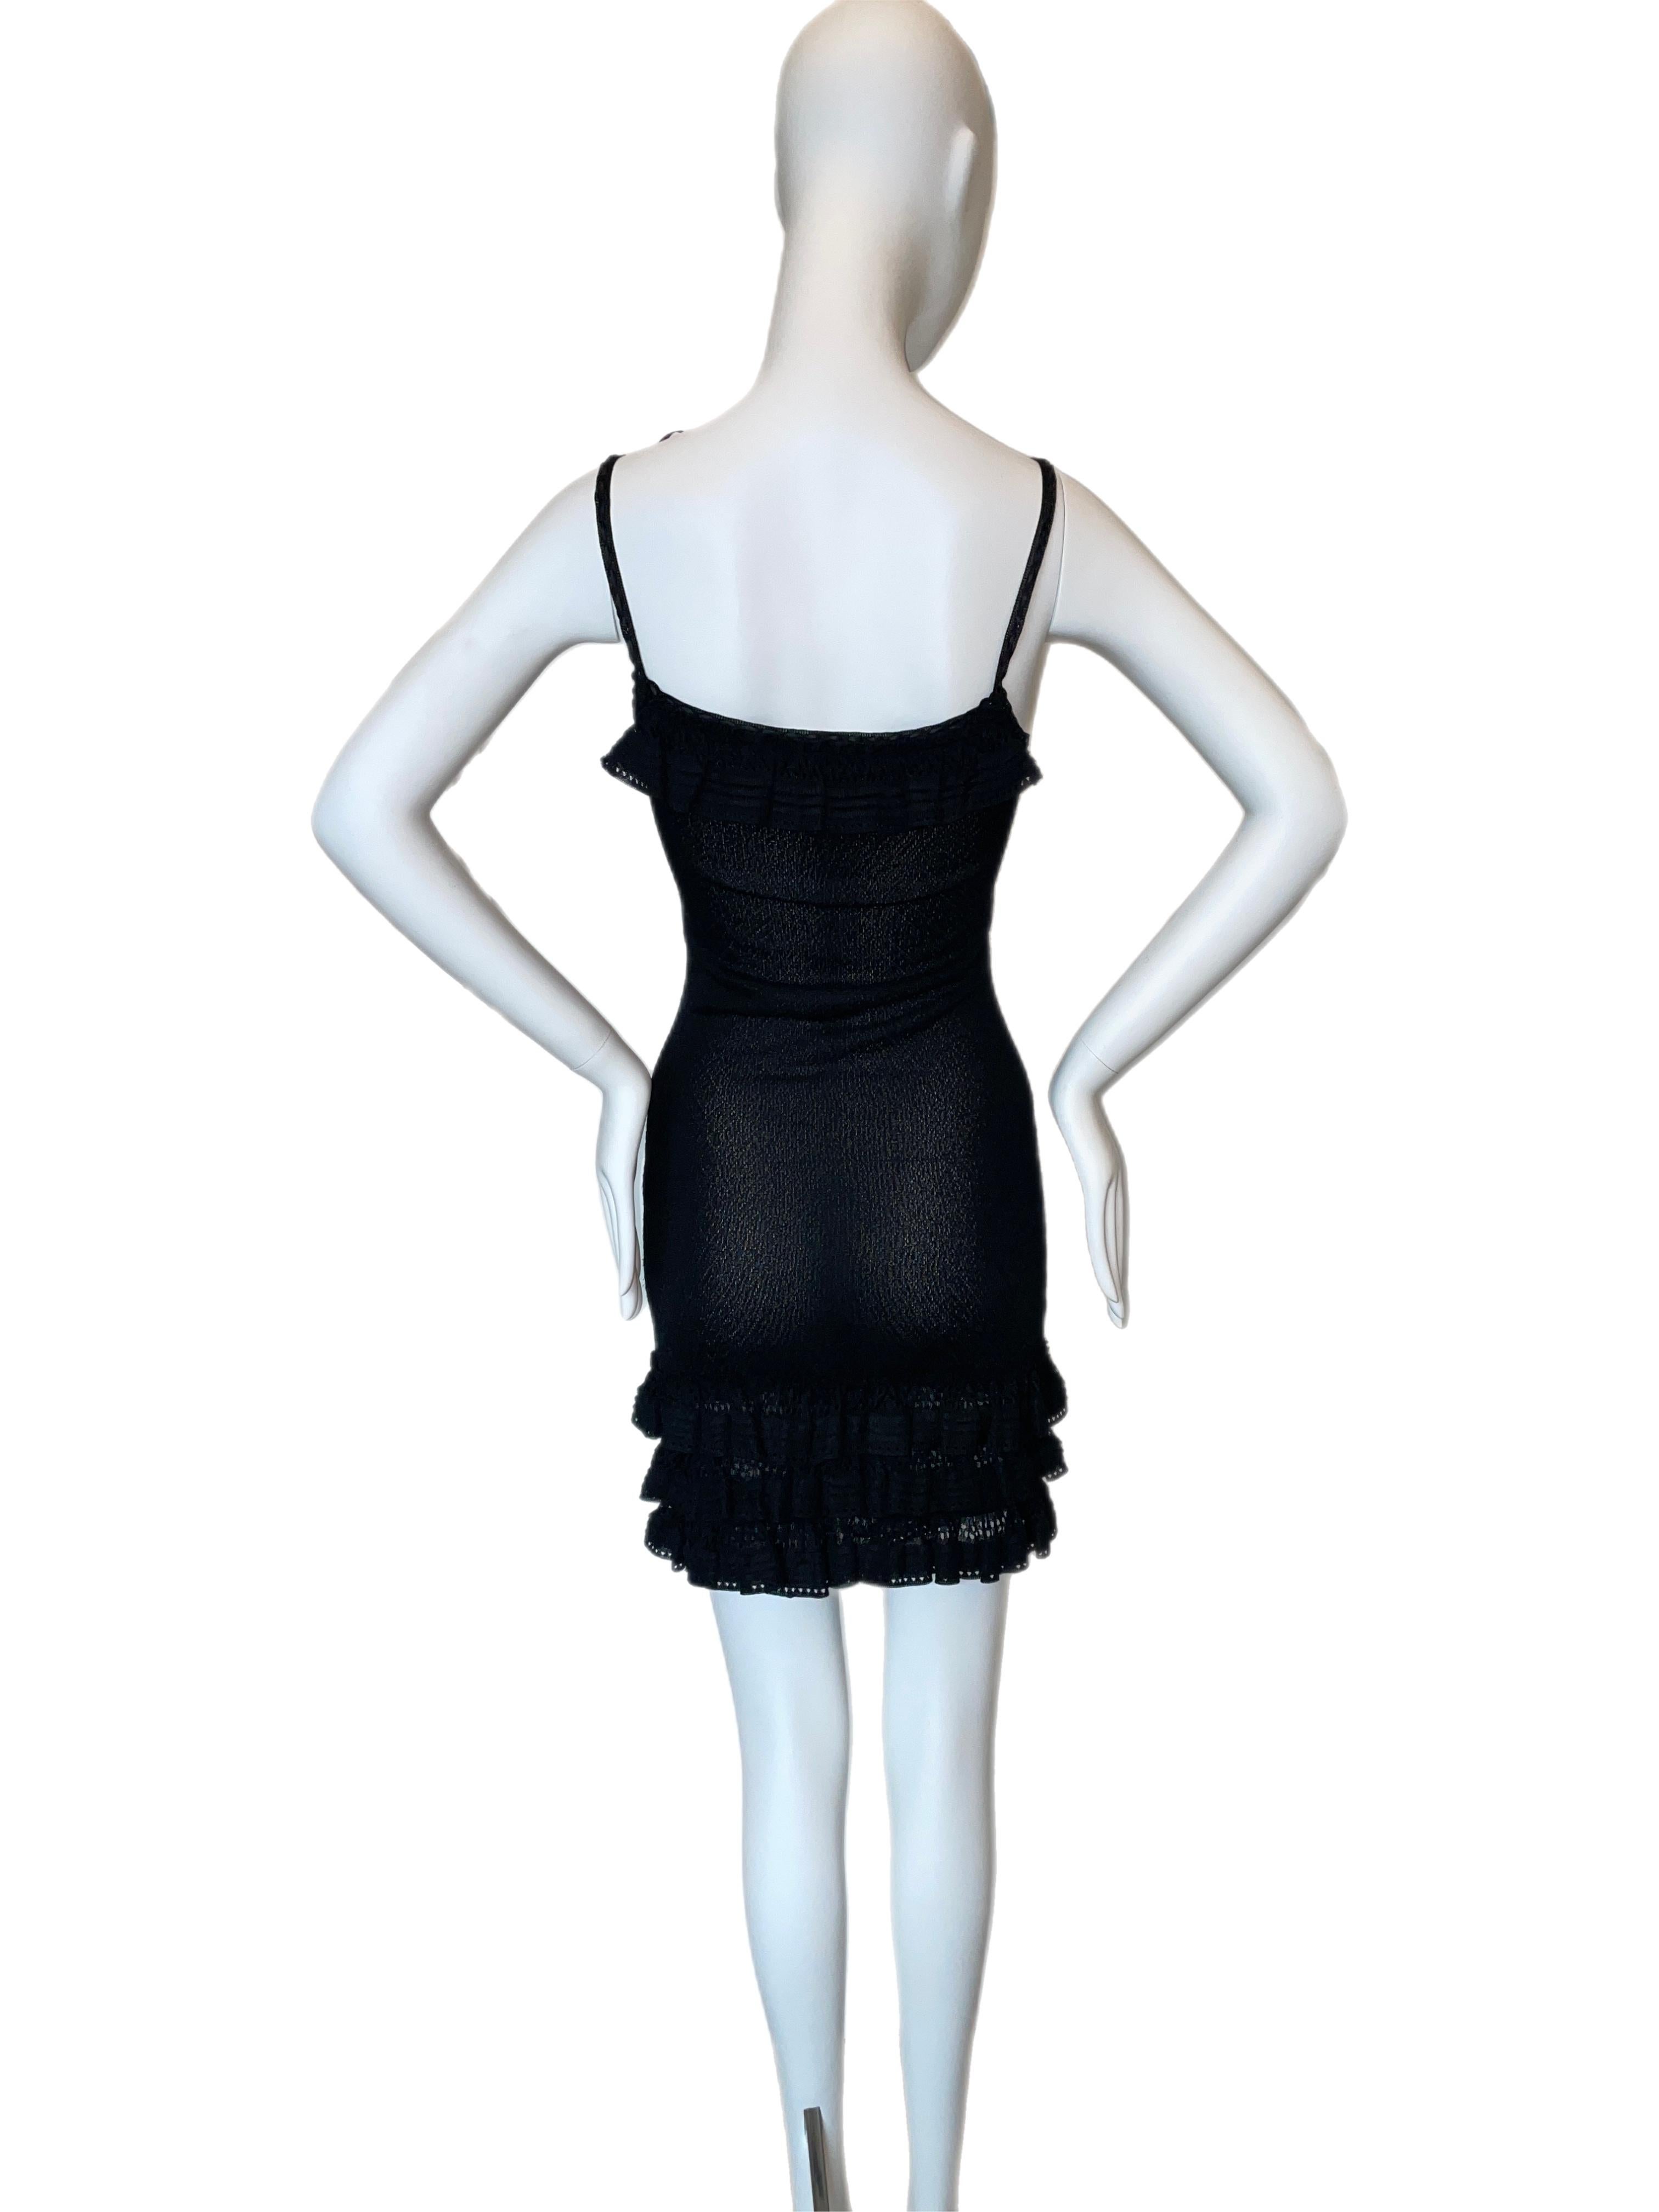 Women's John Galliano for Christian Dior 2006 vintage little black dress